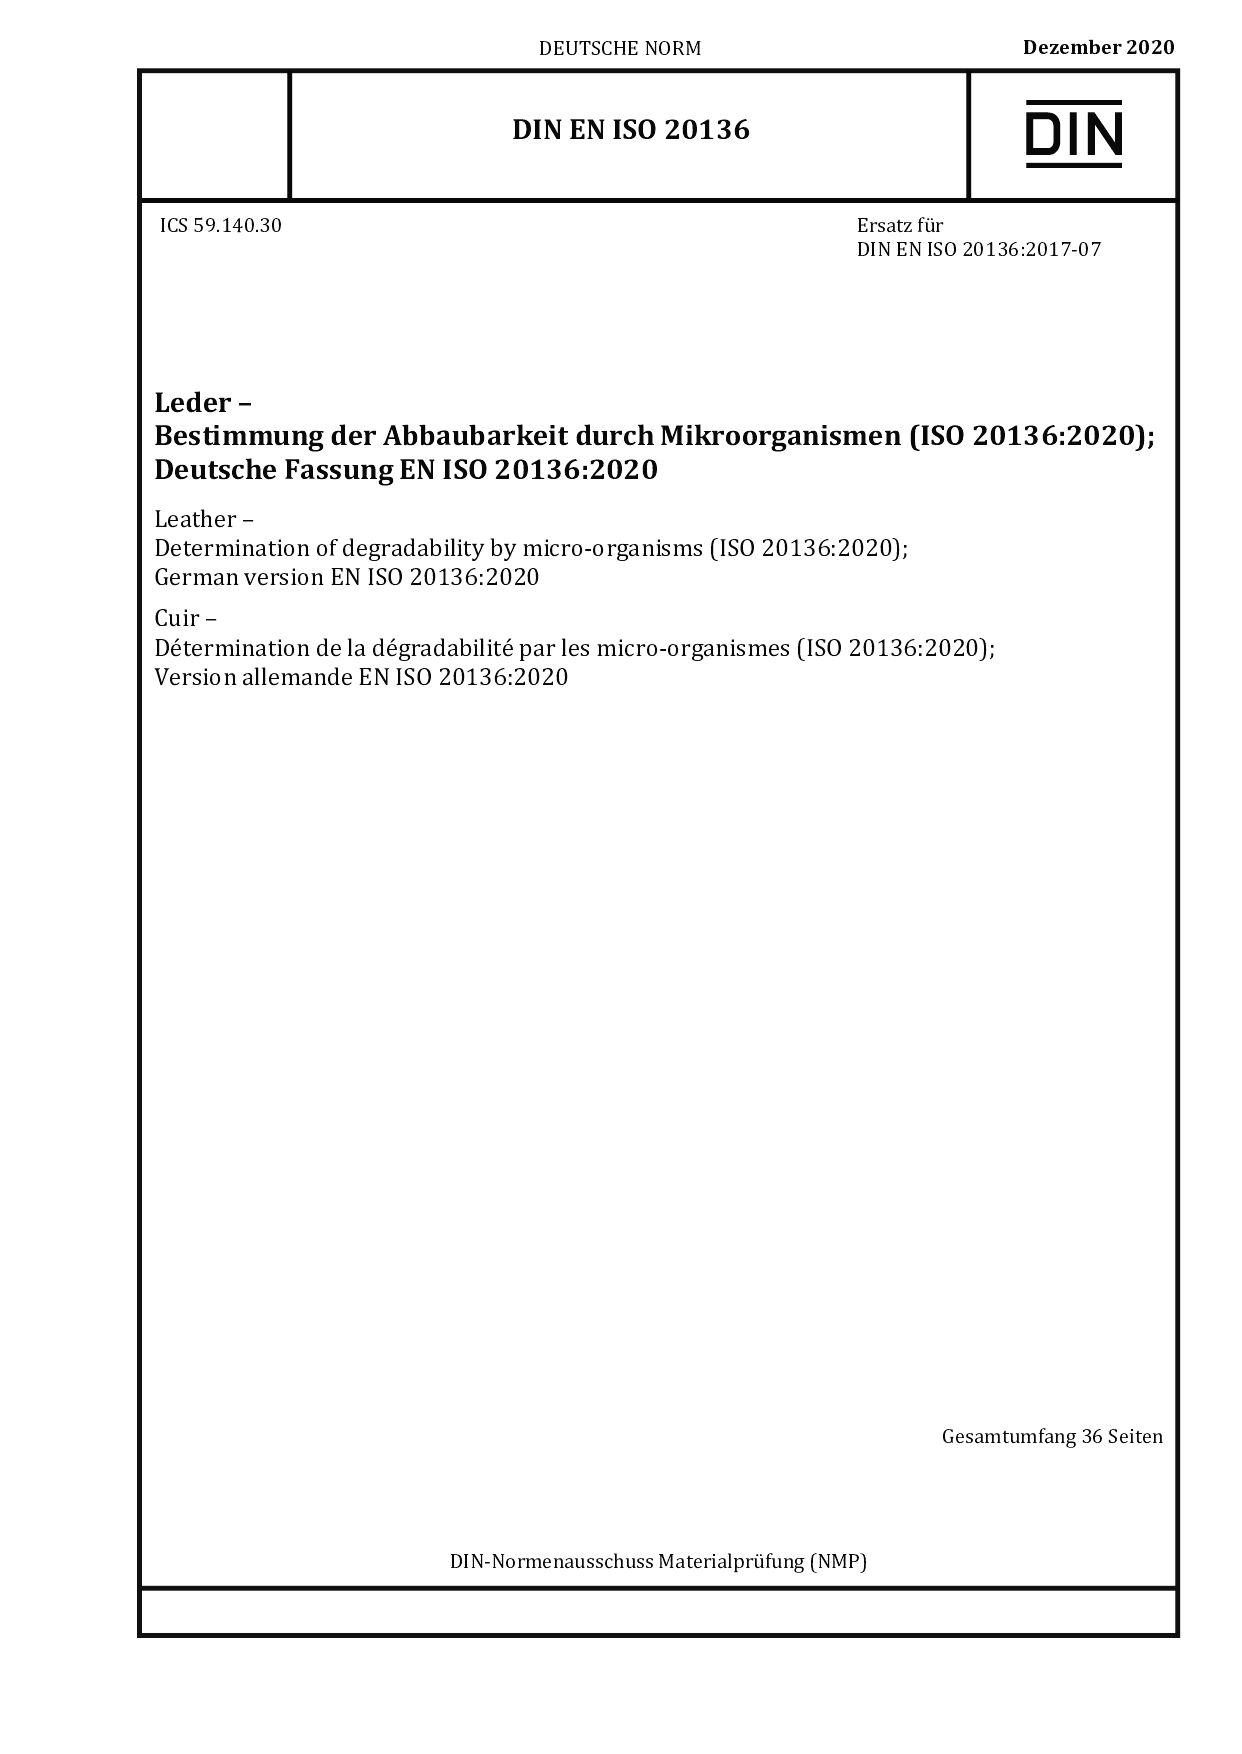 DIN EN ISO 20136:2020封面图